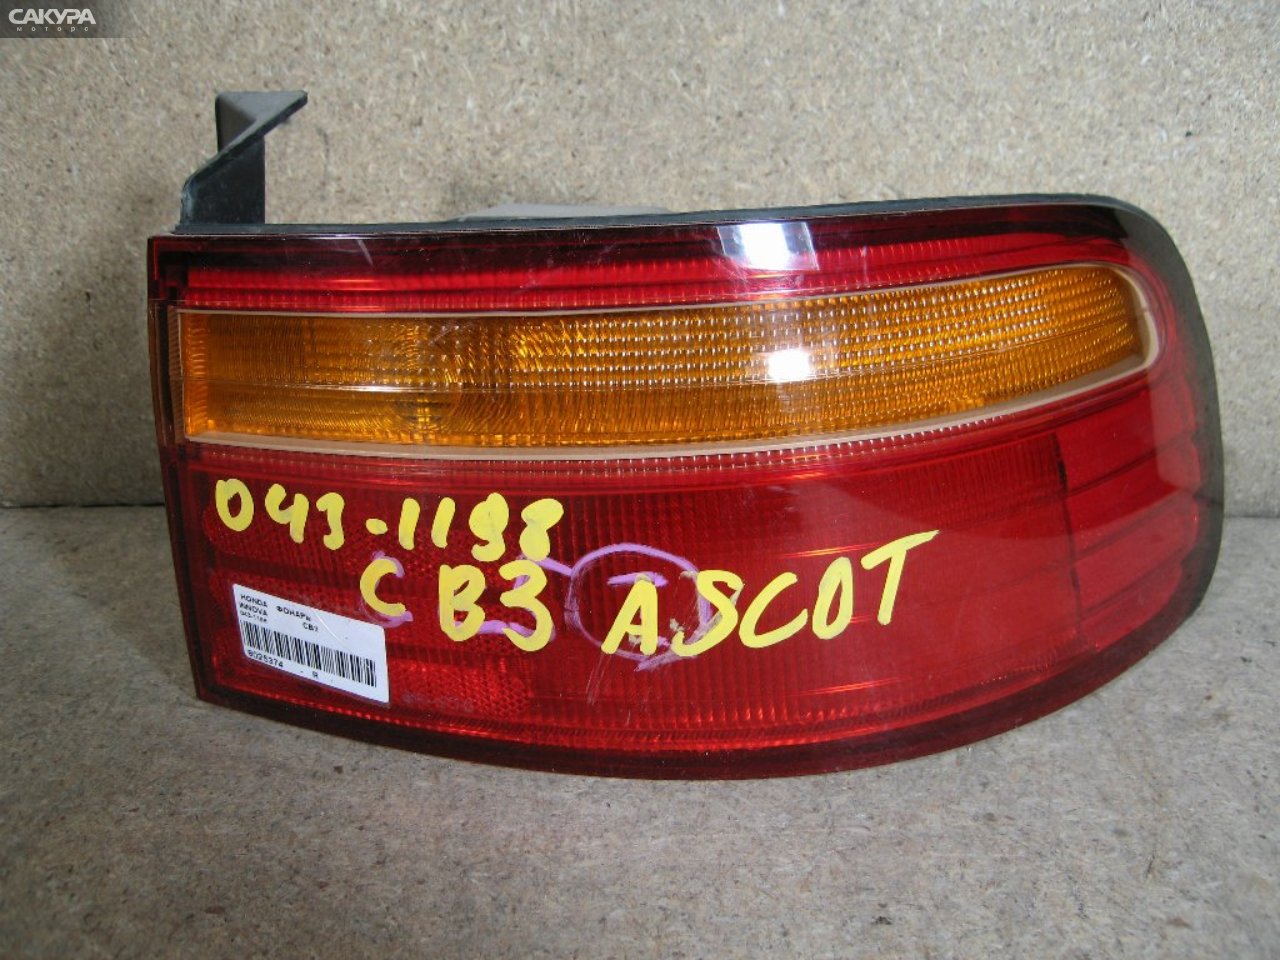 Фонарь стоп-сигнала правый Honda Ascot Innova CB3 043-1198: купить в Сакура Абакан.